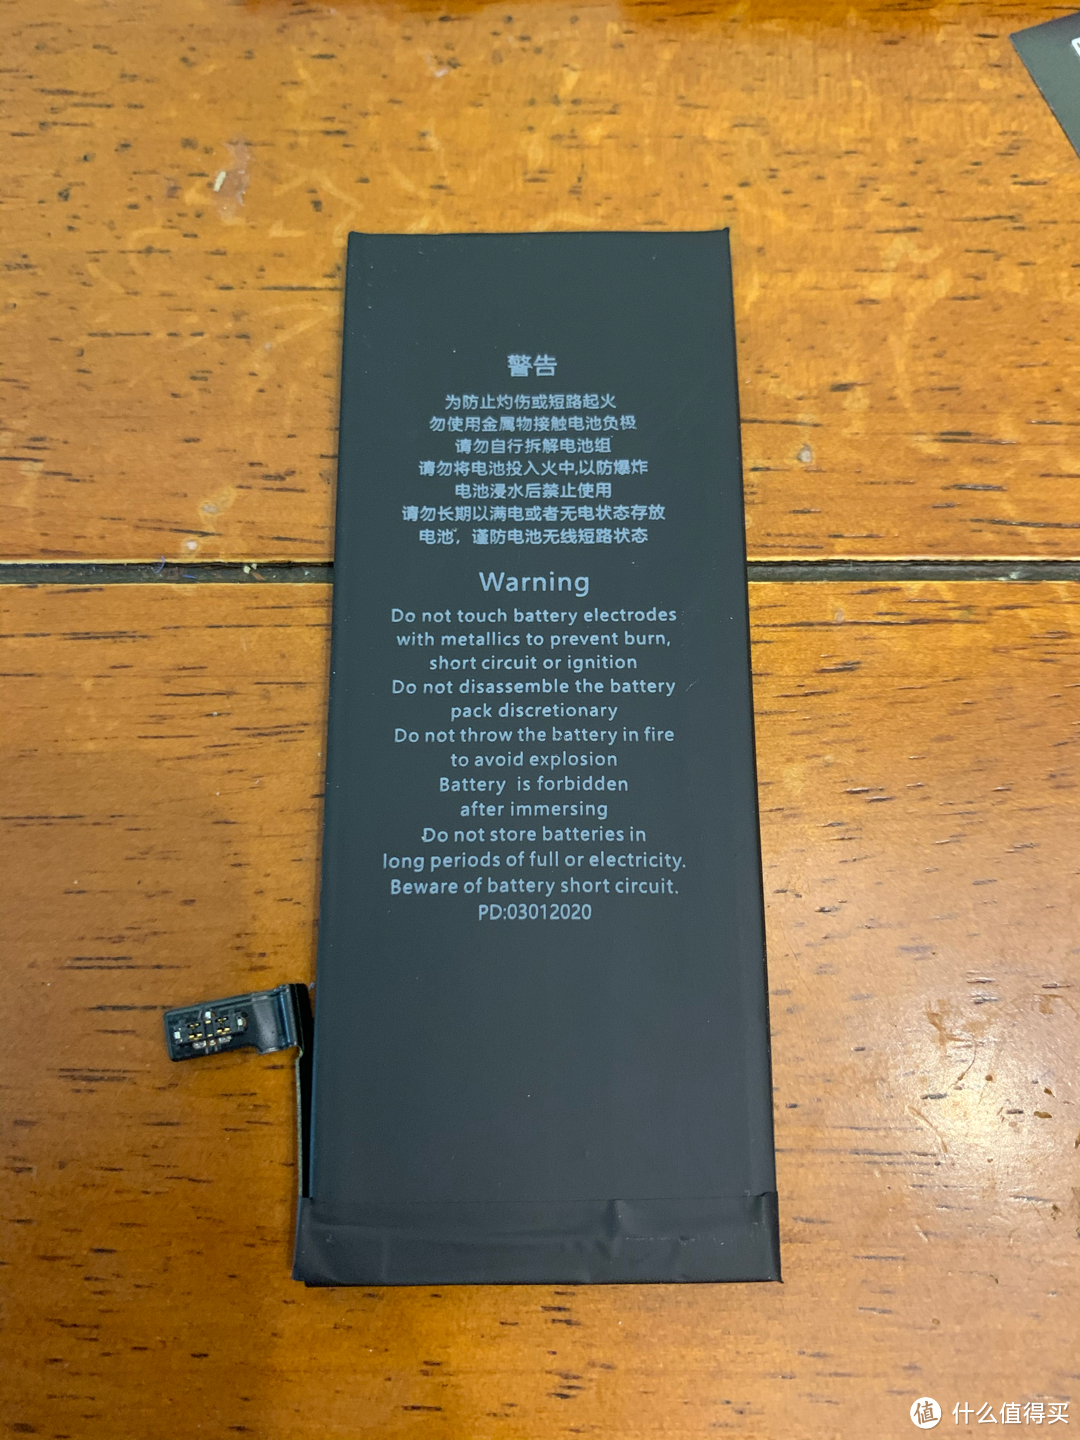 图书馆猿の倍思(Baseus) iPhone6s 电池更换小记